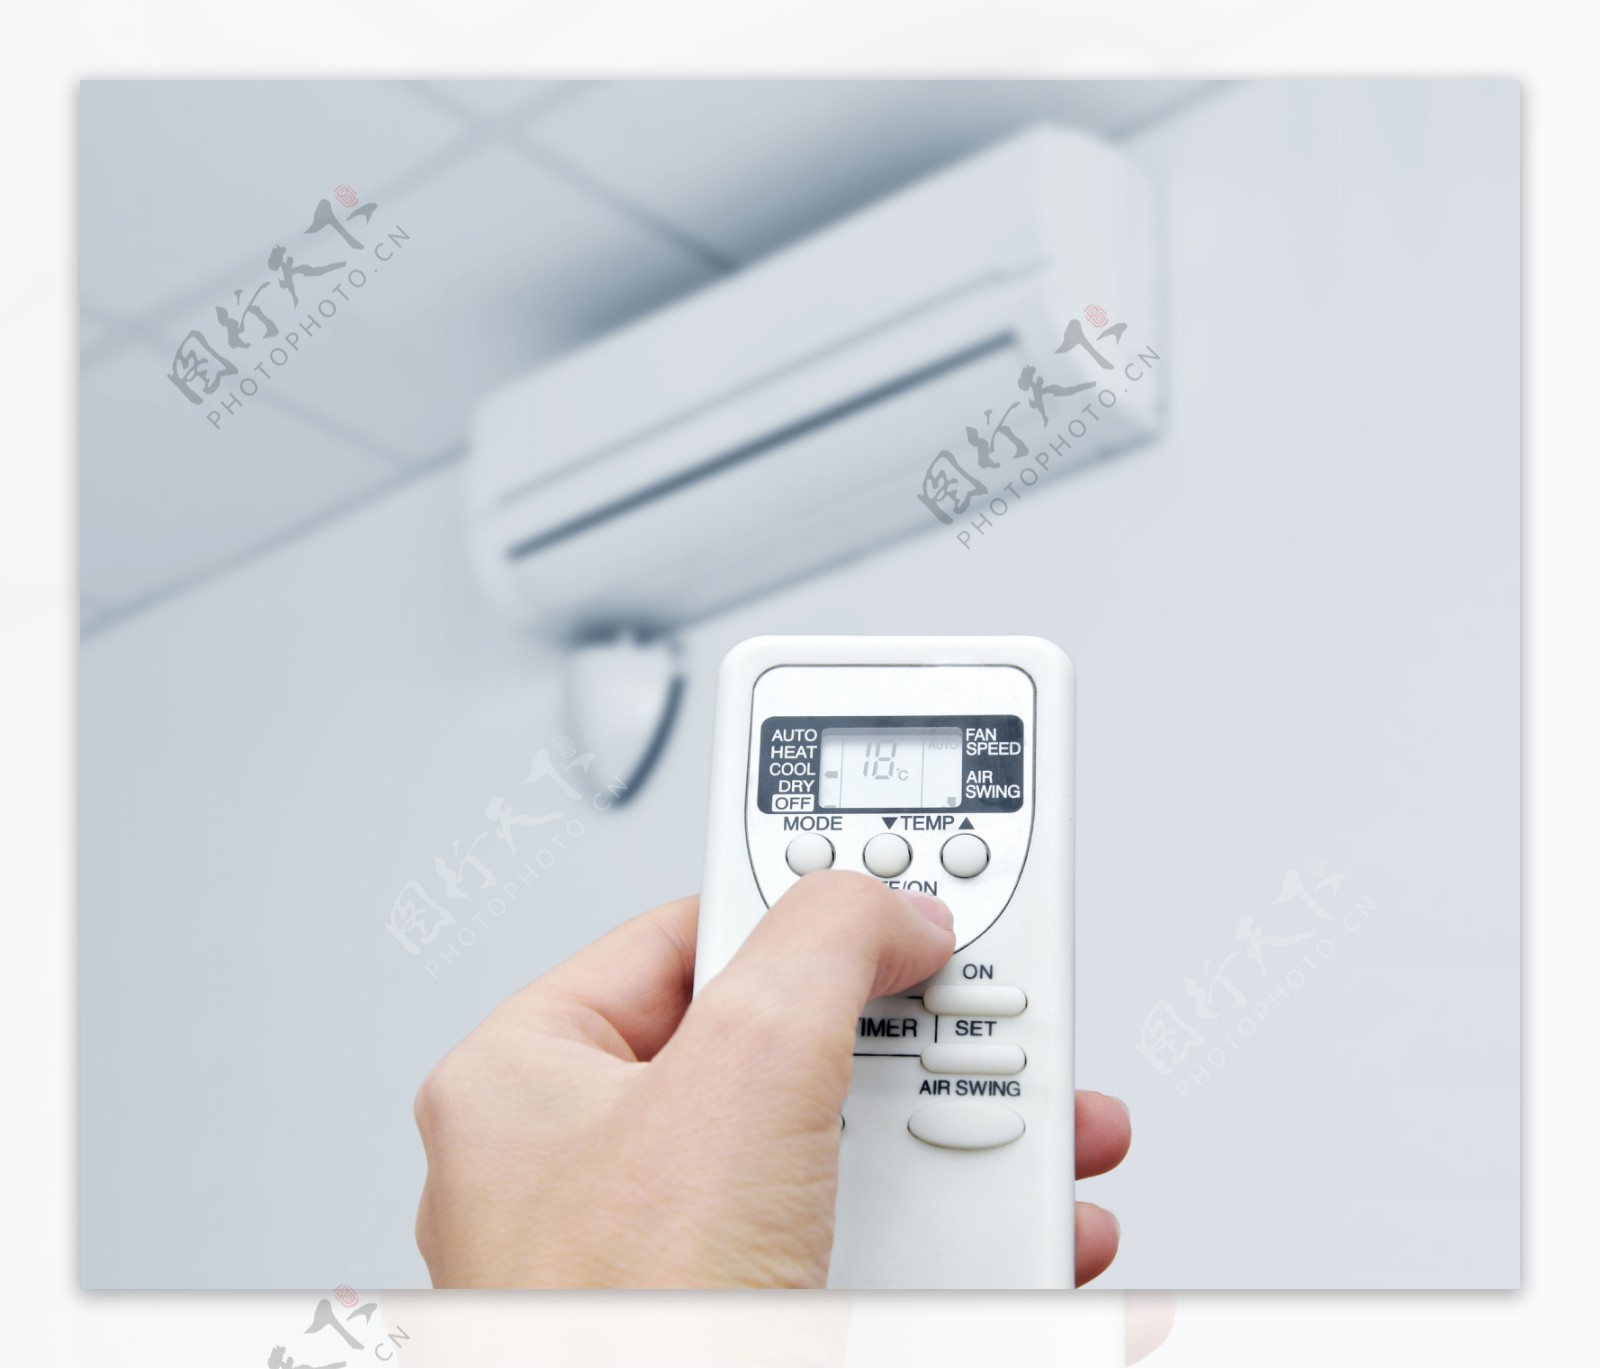 空调遥控器调节温度图片